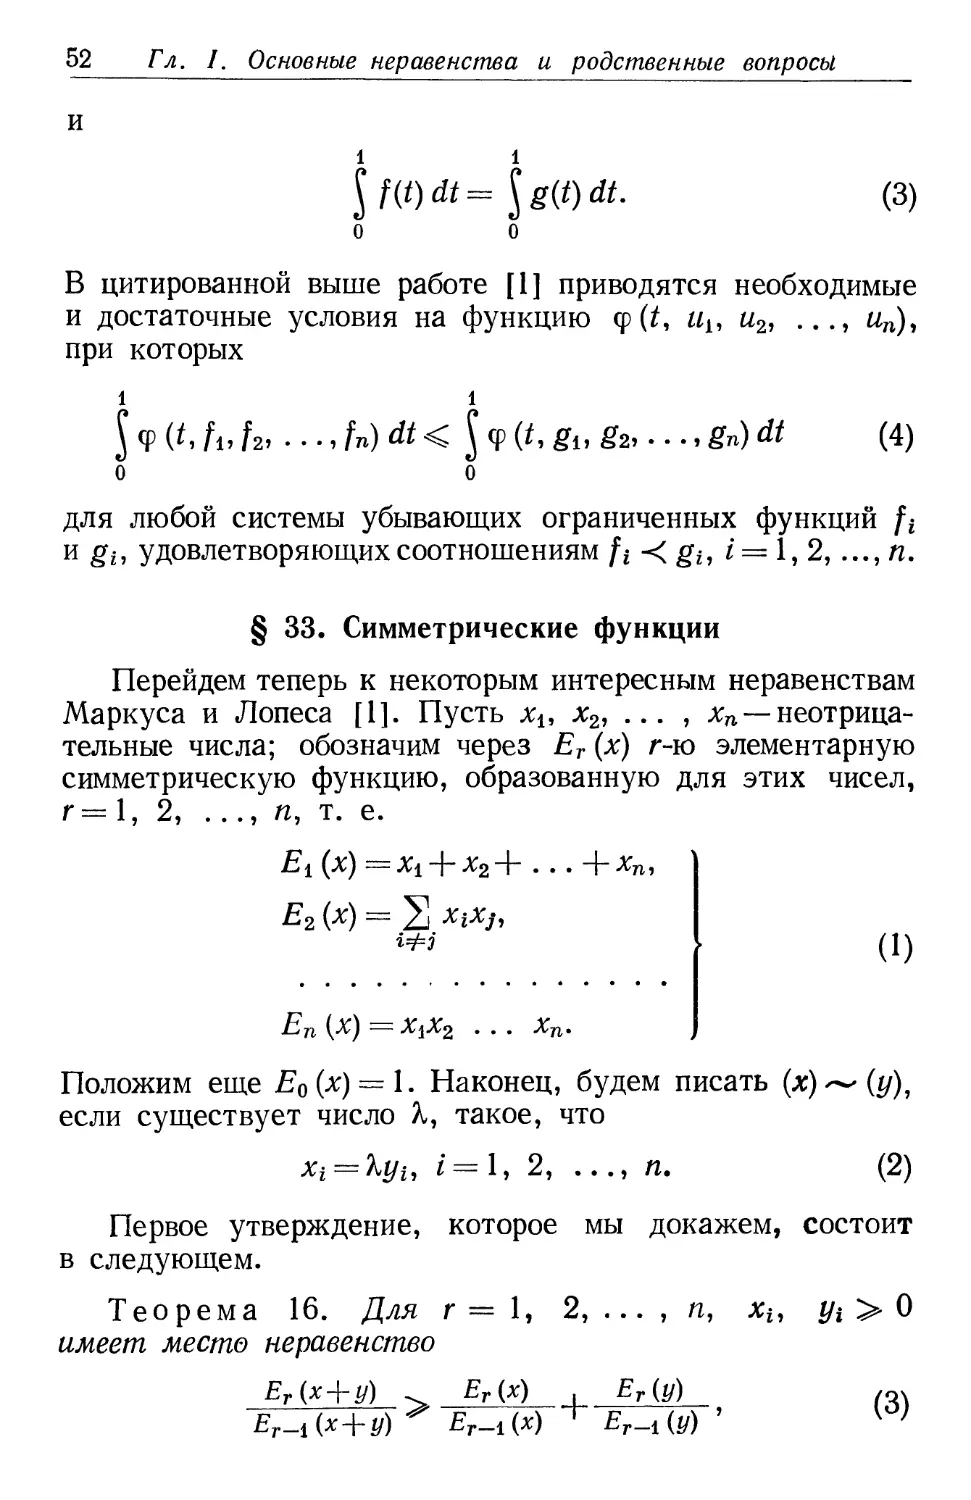 § 33. Симметрические функции